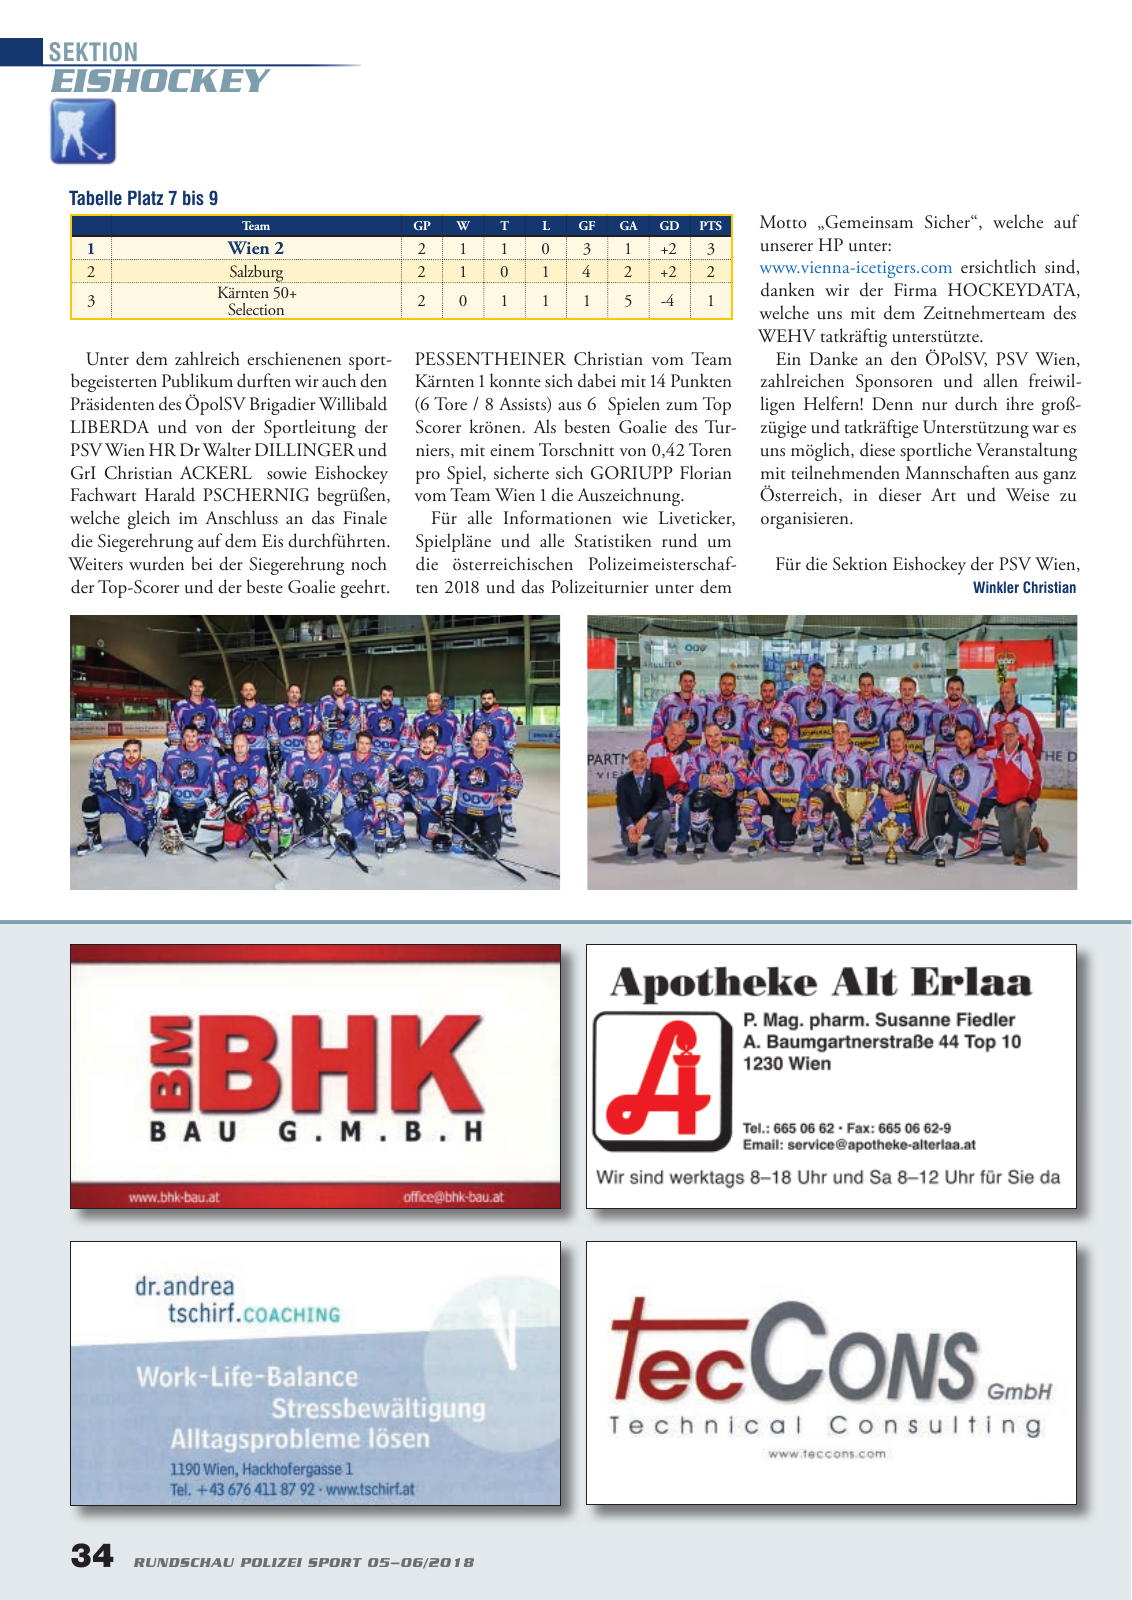 Vorschau Rundschau Polizei Sport 05-06/2018 Seite 34